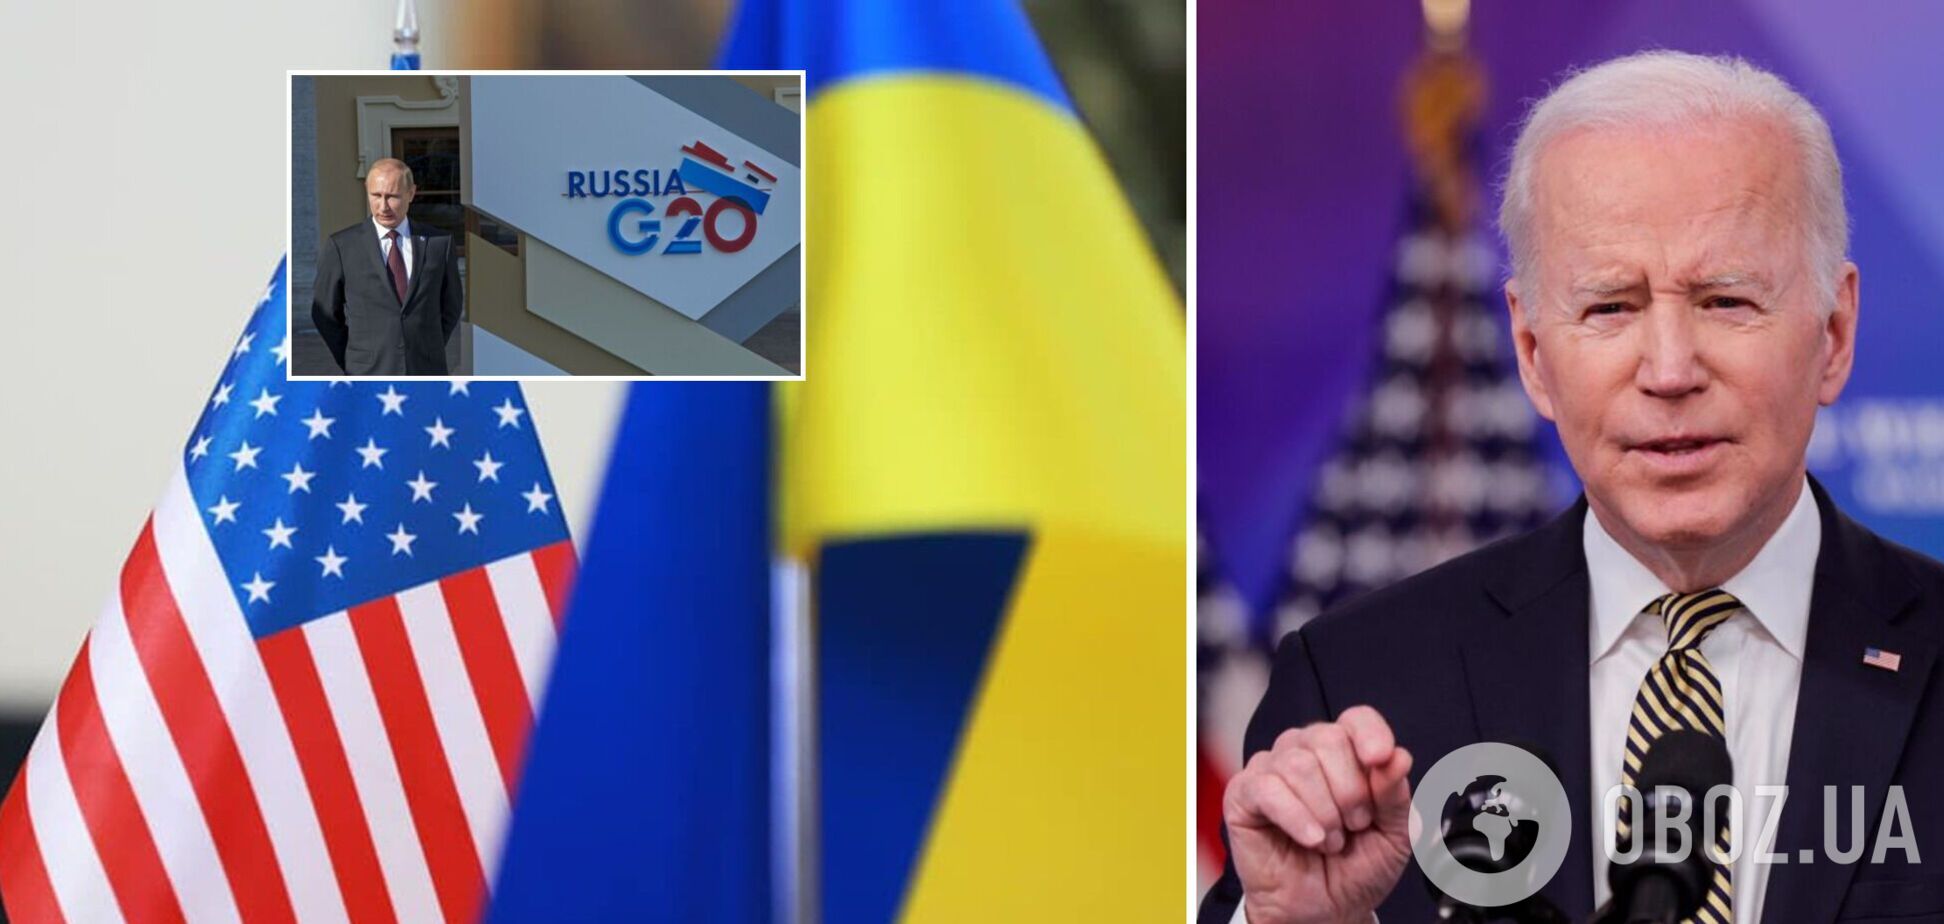 Байден считает, что РФ нужно исключить из G20: ее место должна занять Украина